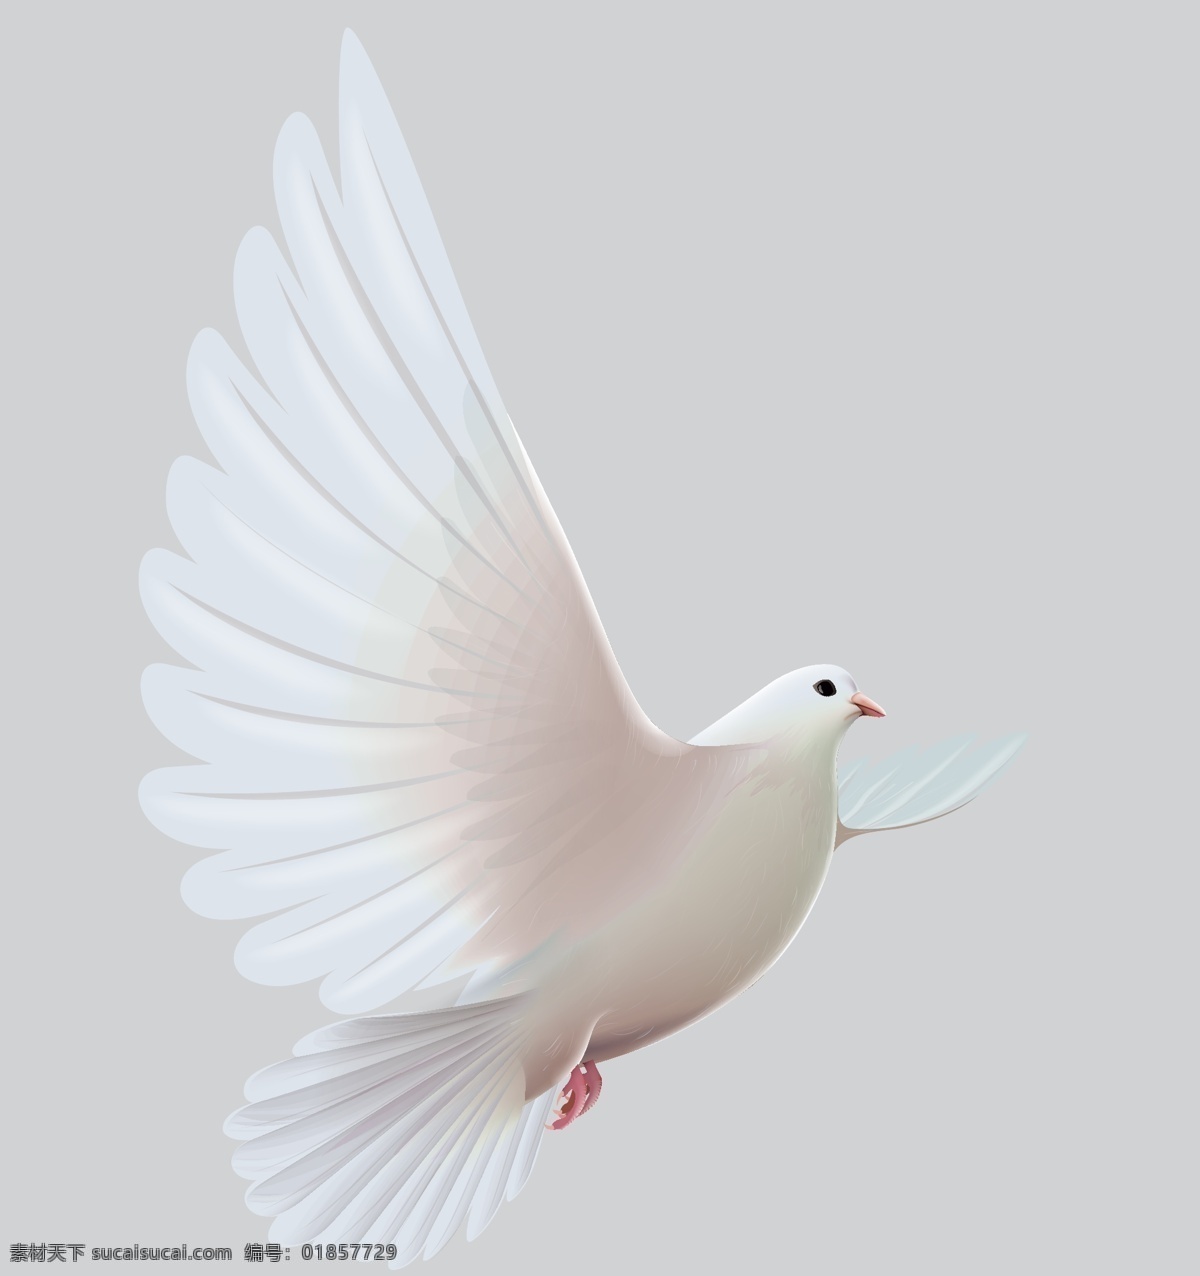 和平鸽矢量 和平鸽 矢量素材 矢量 橄榄叶 白鸽 飞翔的白鸽 飞翔的和平鸽 动物素材 生物世界 鸟类